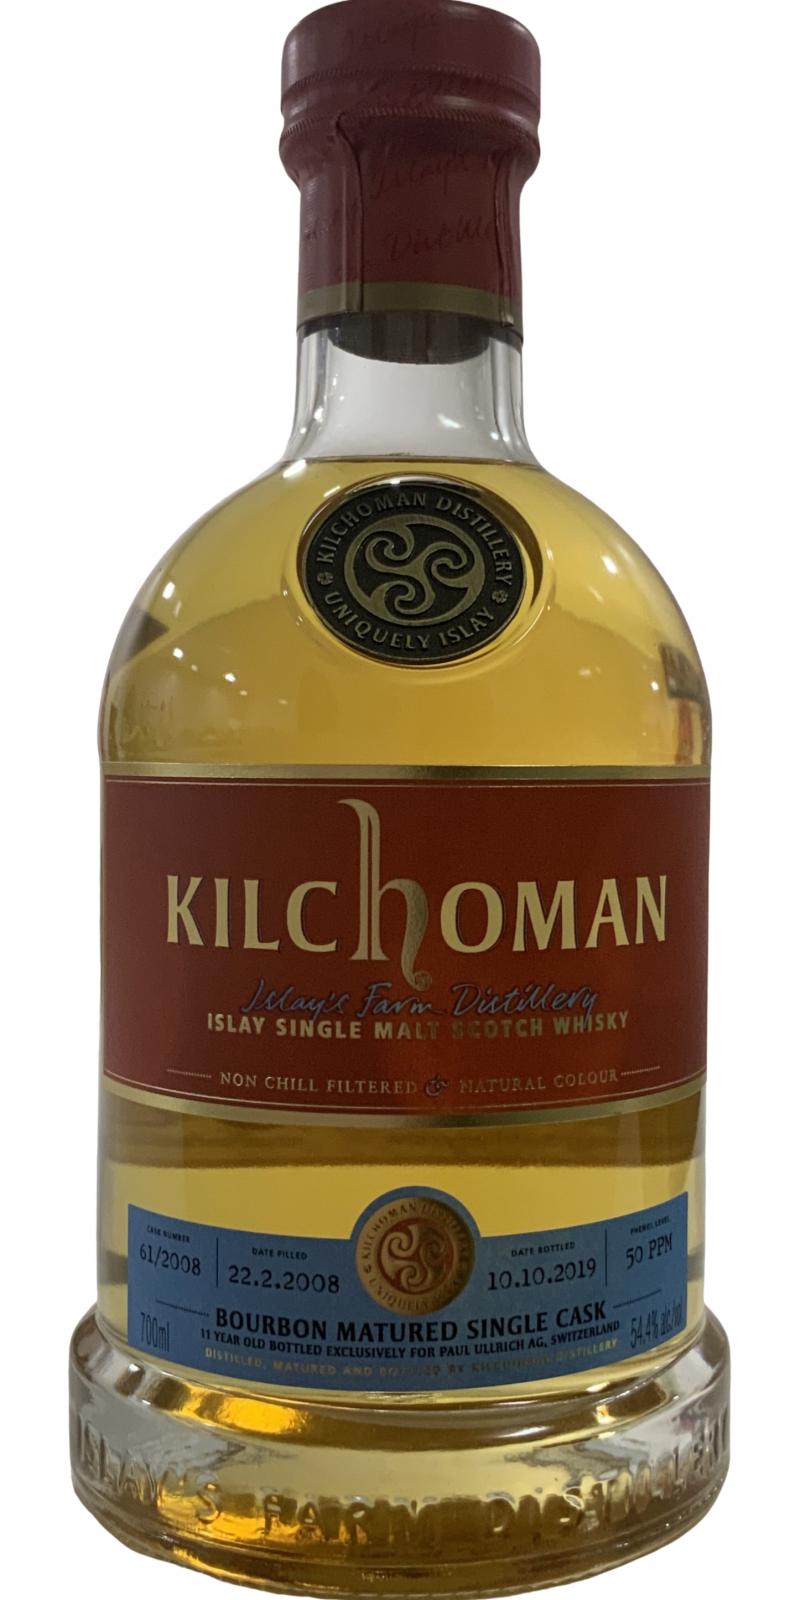 Kilchoman 2008 Single Cask Release Bourbon 61/2008 Paul Ullrich AG Switzerland 54.4% 700ml